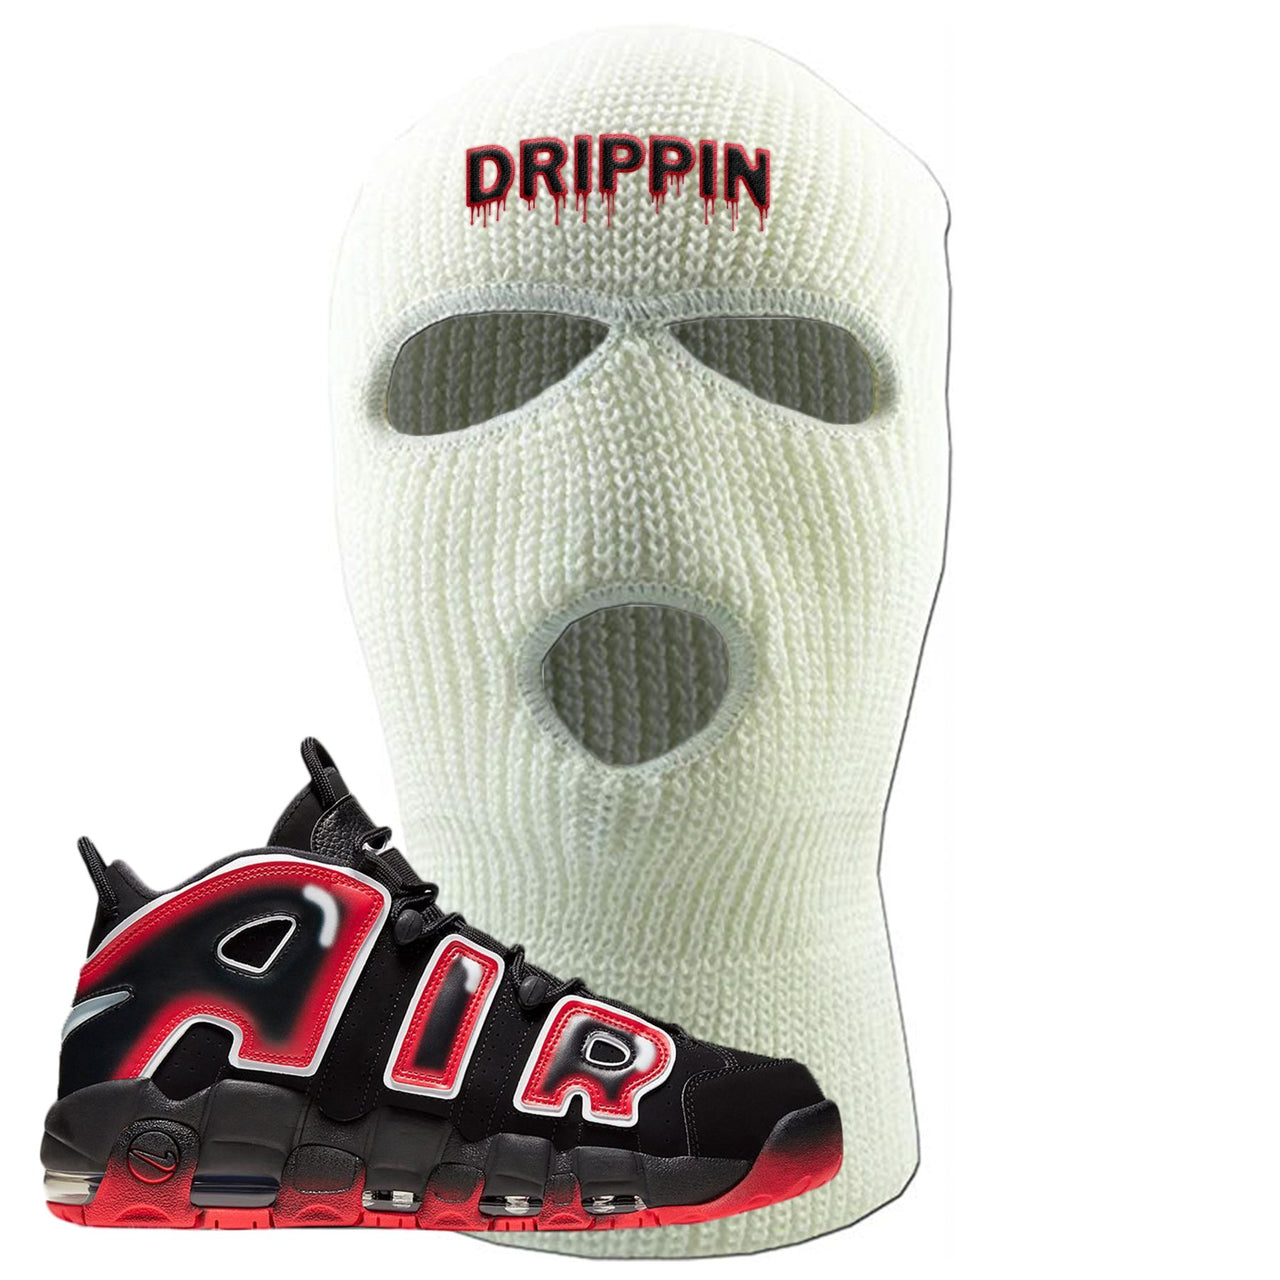 Air More Uptempo Laser Crimson Drippin White Sneaker Hook Up Ski Mask